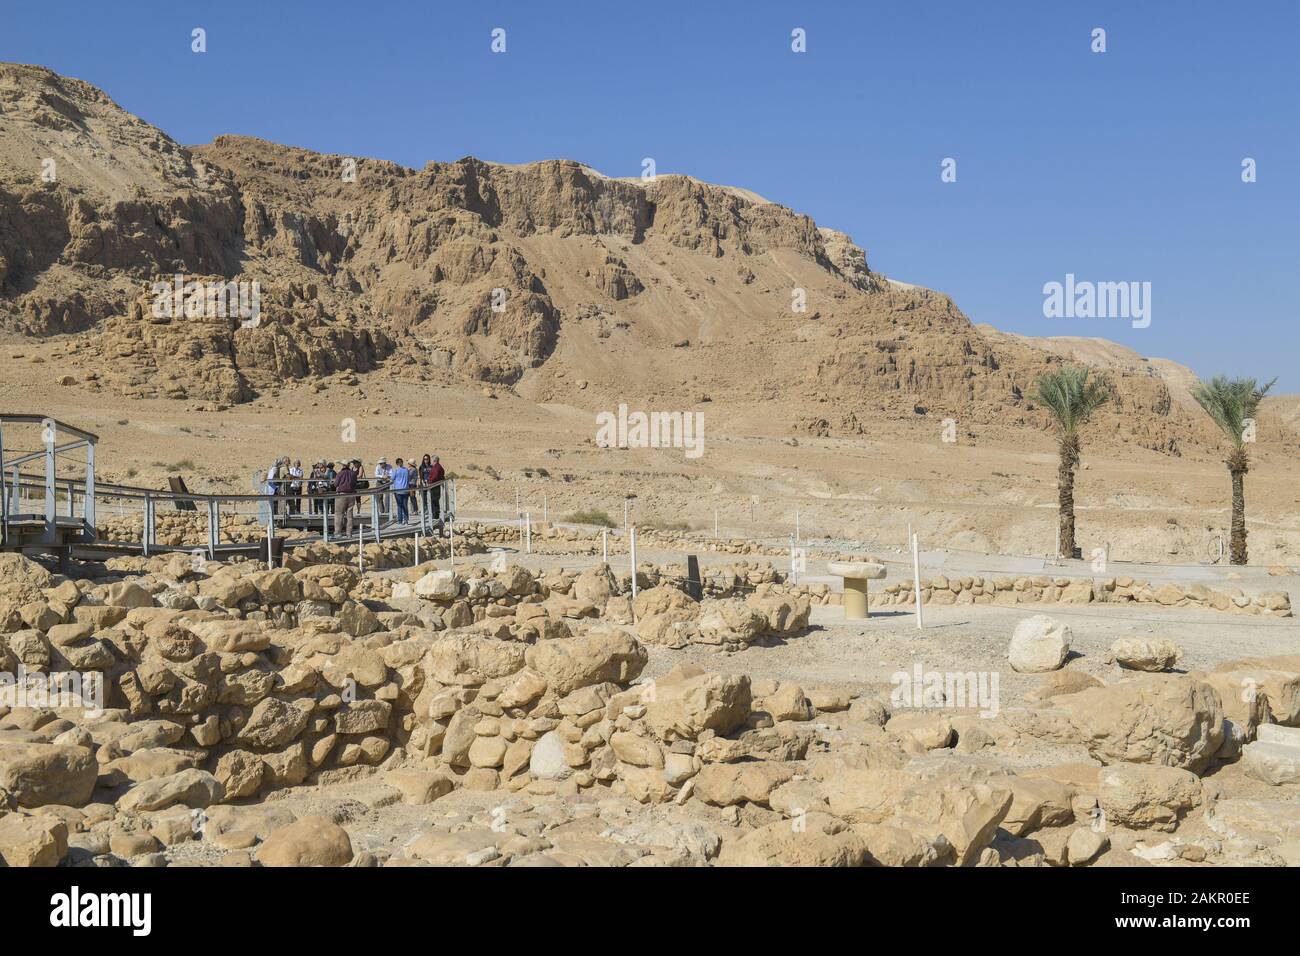 Felslandschaft, Palmen an der Ausgrabungsstätte Qumran, Israel Stock Photo